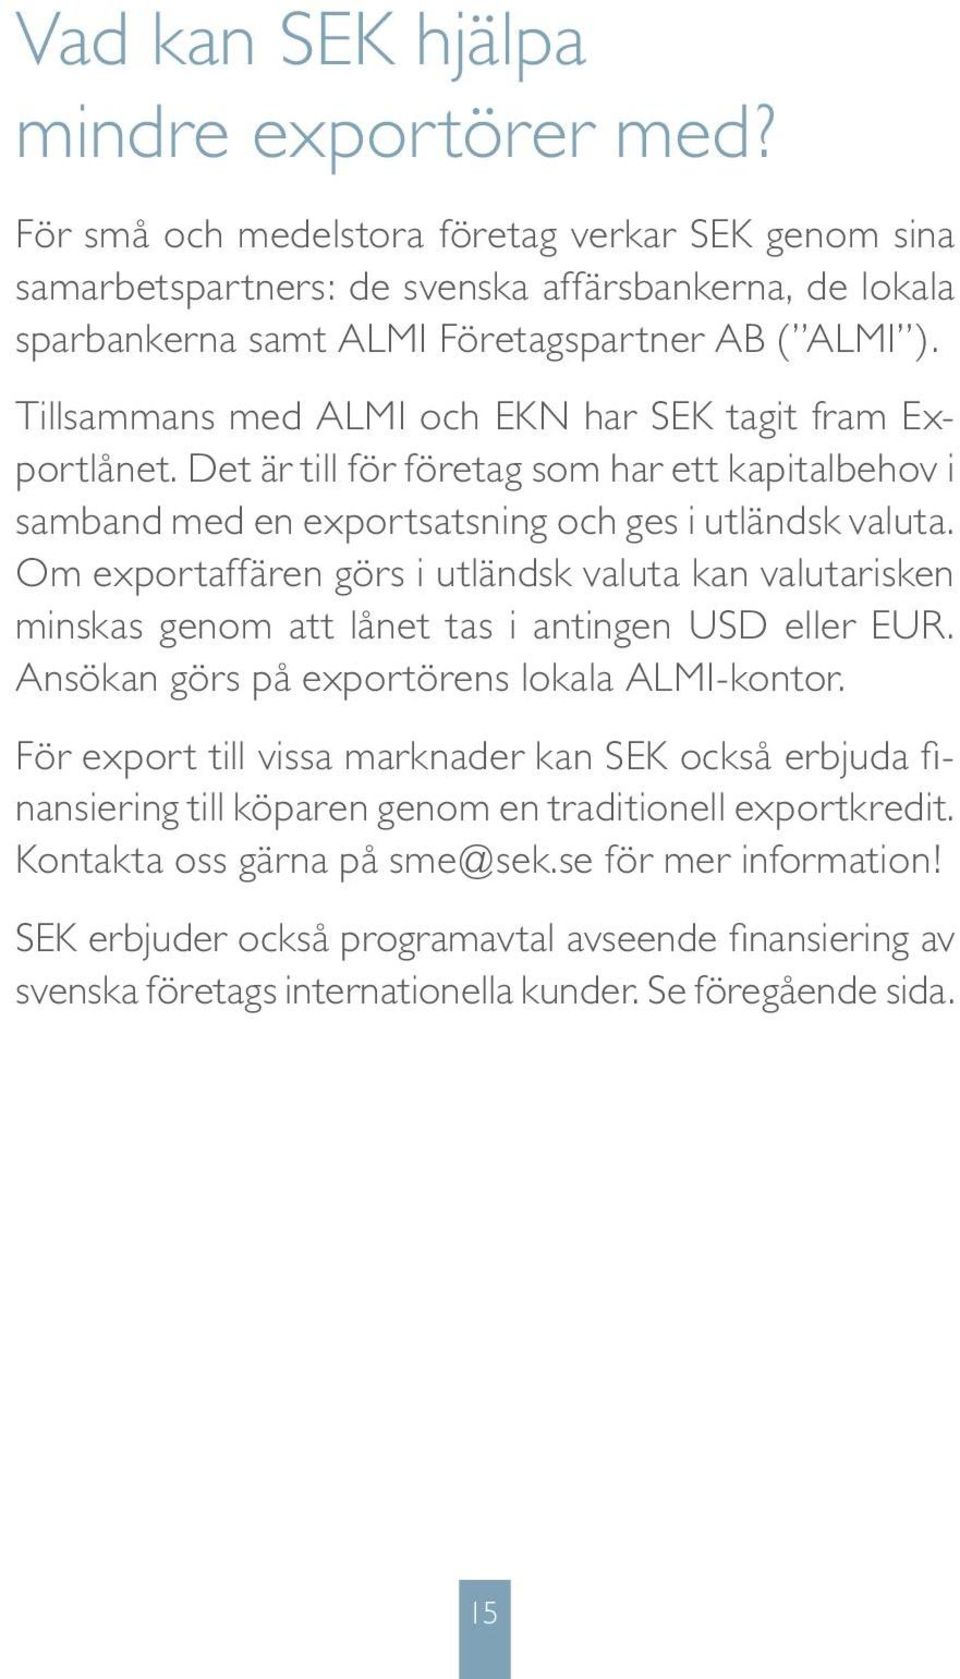 Tillsammans med ALMI och EKN har SEK tagit fram Exportlånet. Det är till för företag som har ett kapitalbehov i samband med en exportsatsning och ges i utländsk valuta.